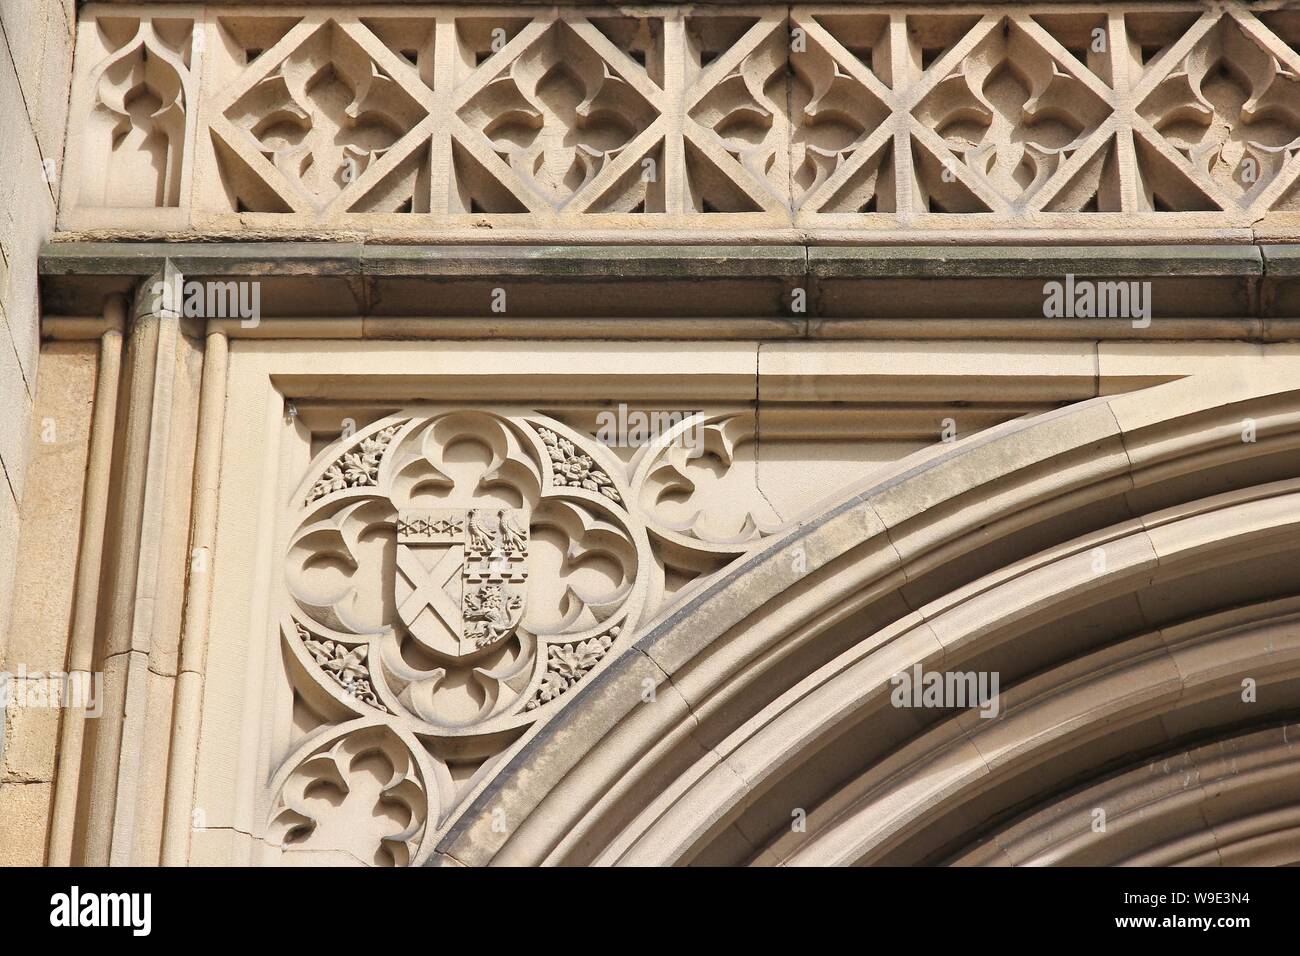 Der Kathedrale von Manchester - Mutterkirche der anglikanischen Diözese von Manchester, UK. Architektur Detail. Stockfoto